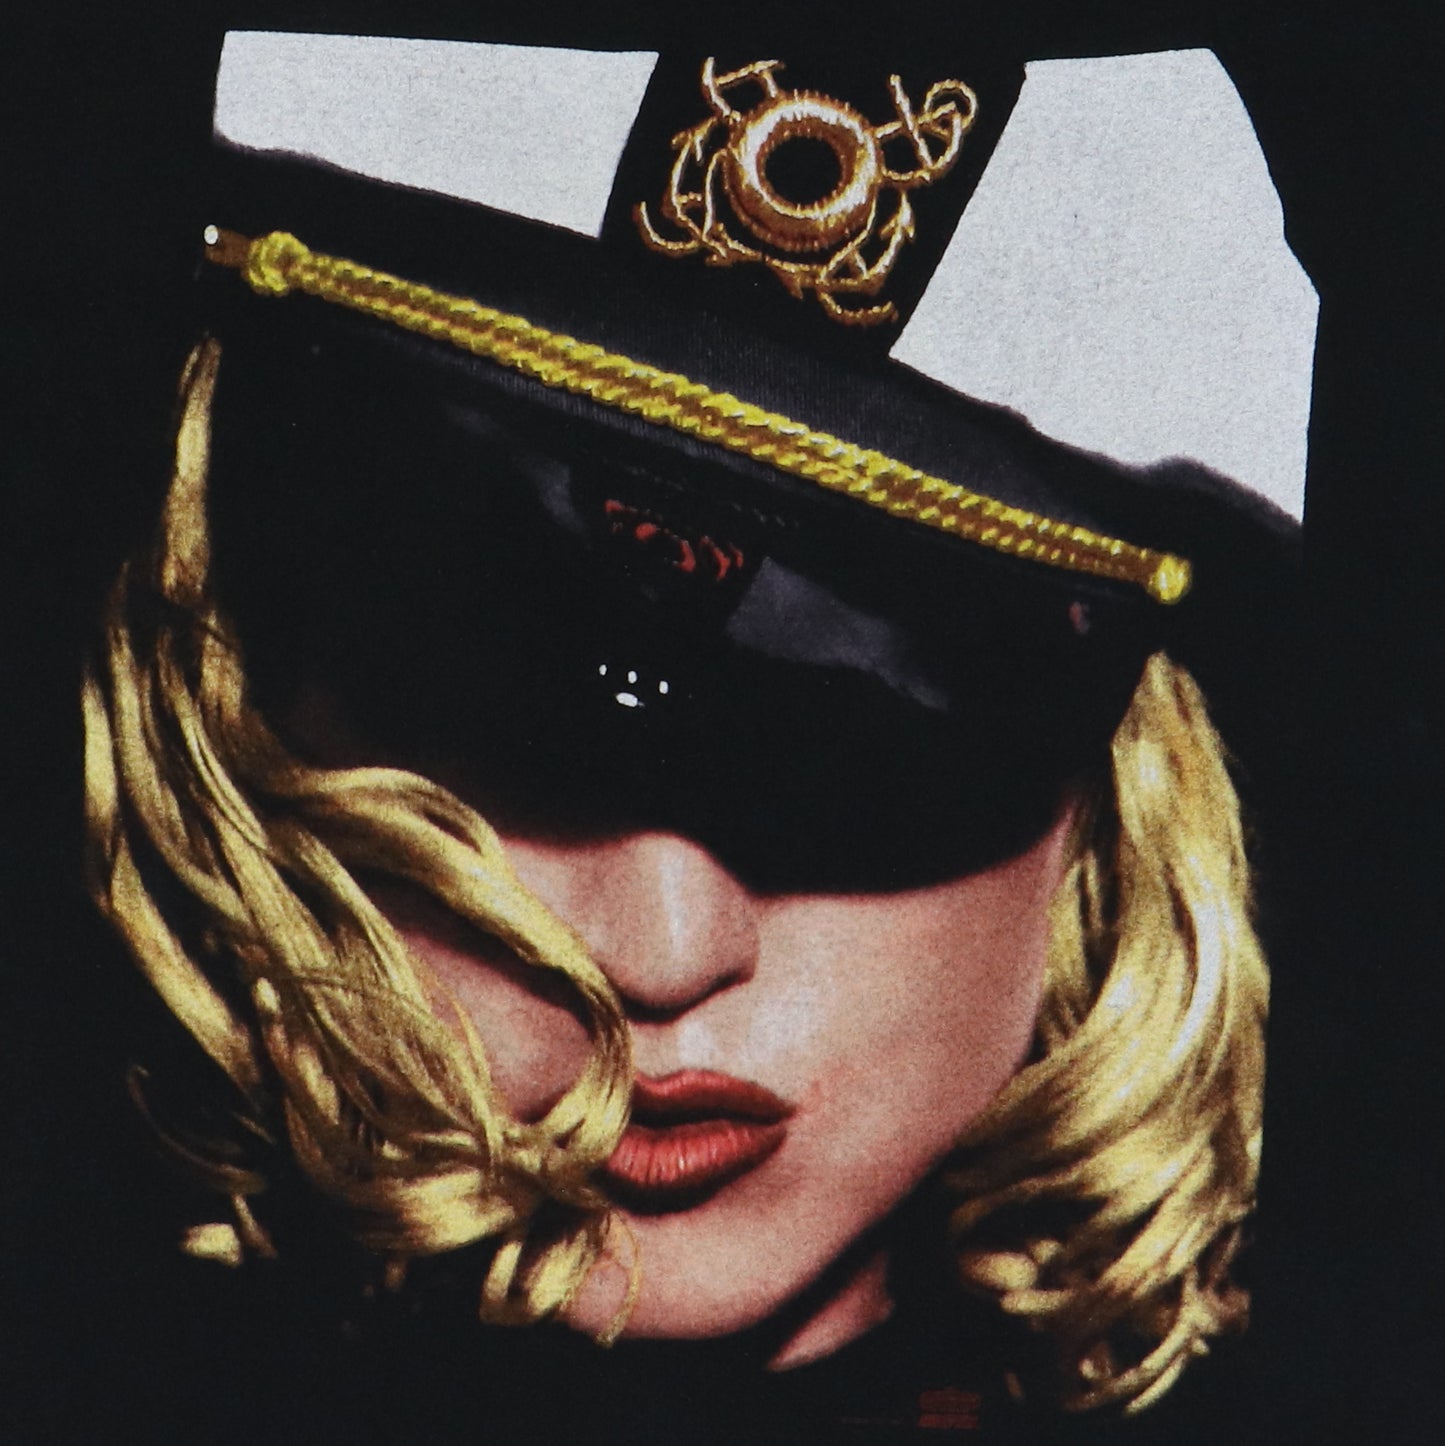 1993 Madonna The Girlie Show Tour Shirt